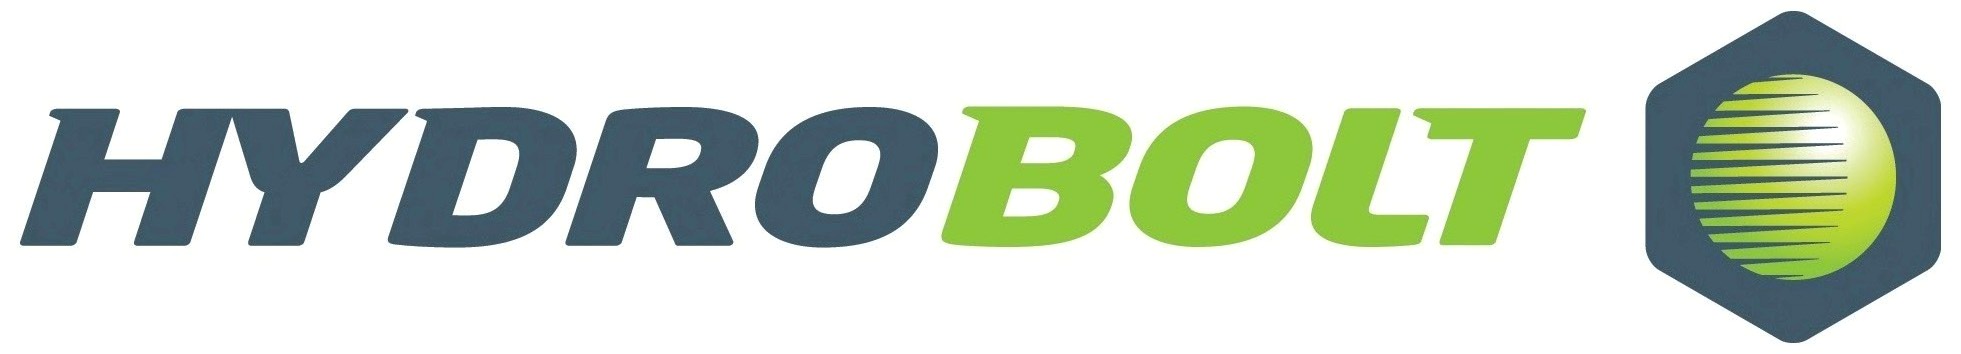 Hydrobolt Ltd logo